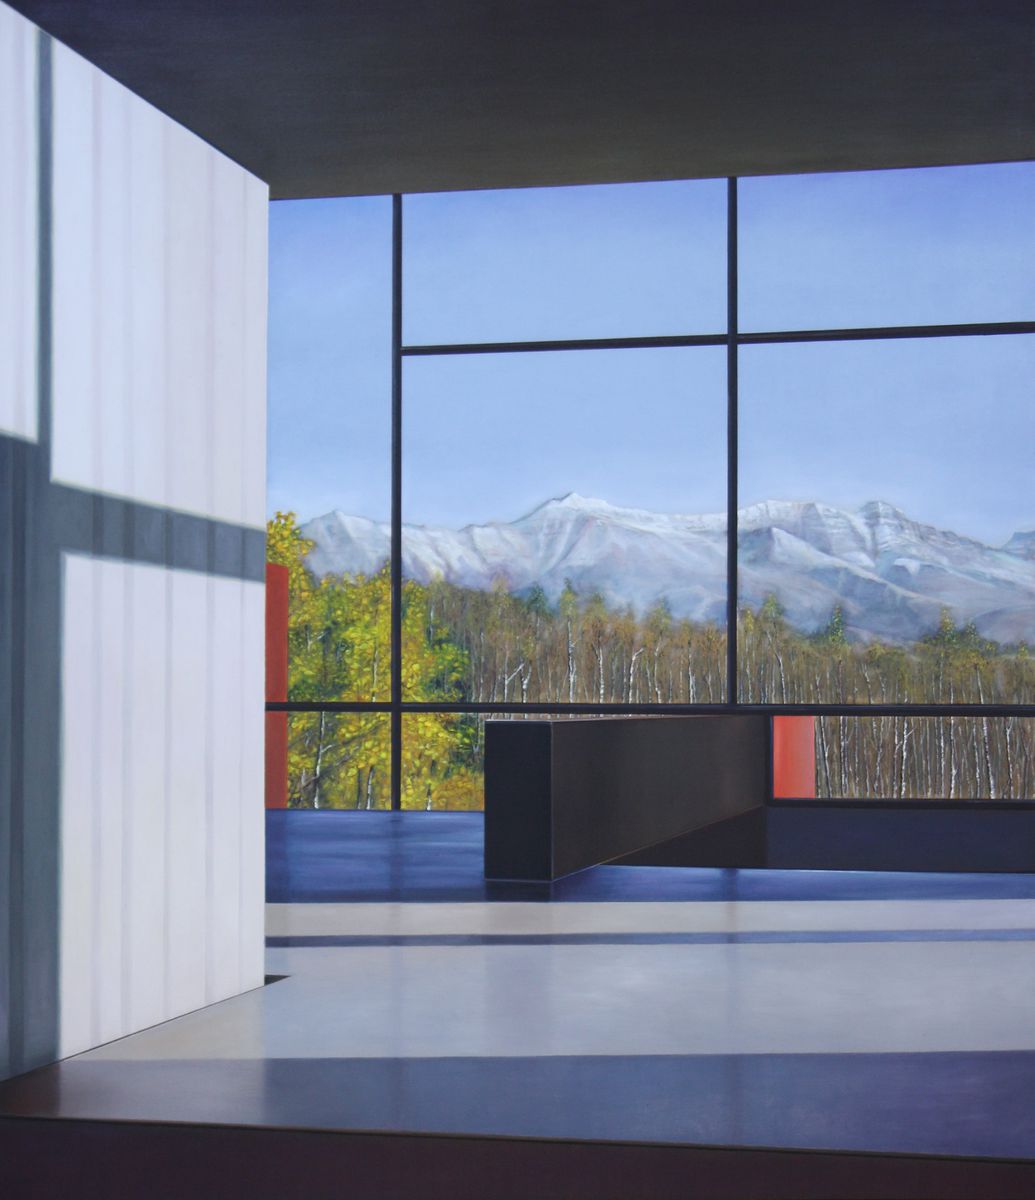 Colorado-house (P.Mondrian), 2018, 145x124cm, Öl auf Lw